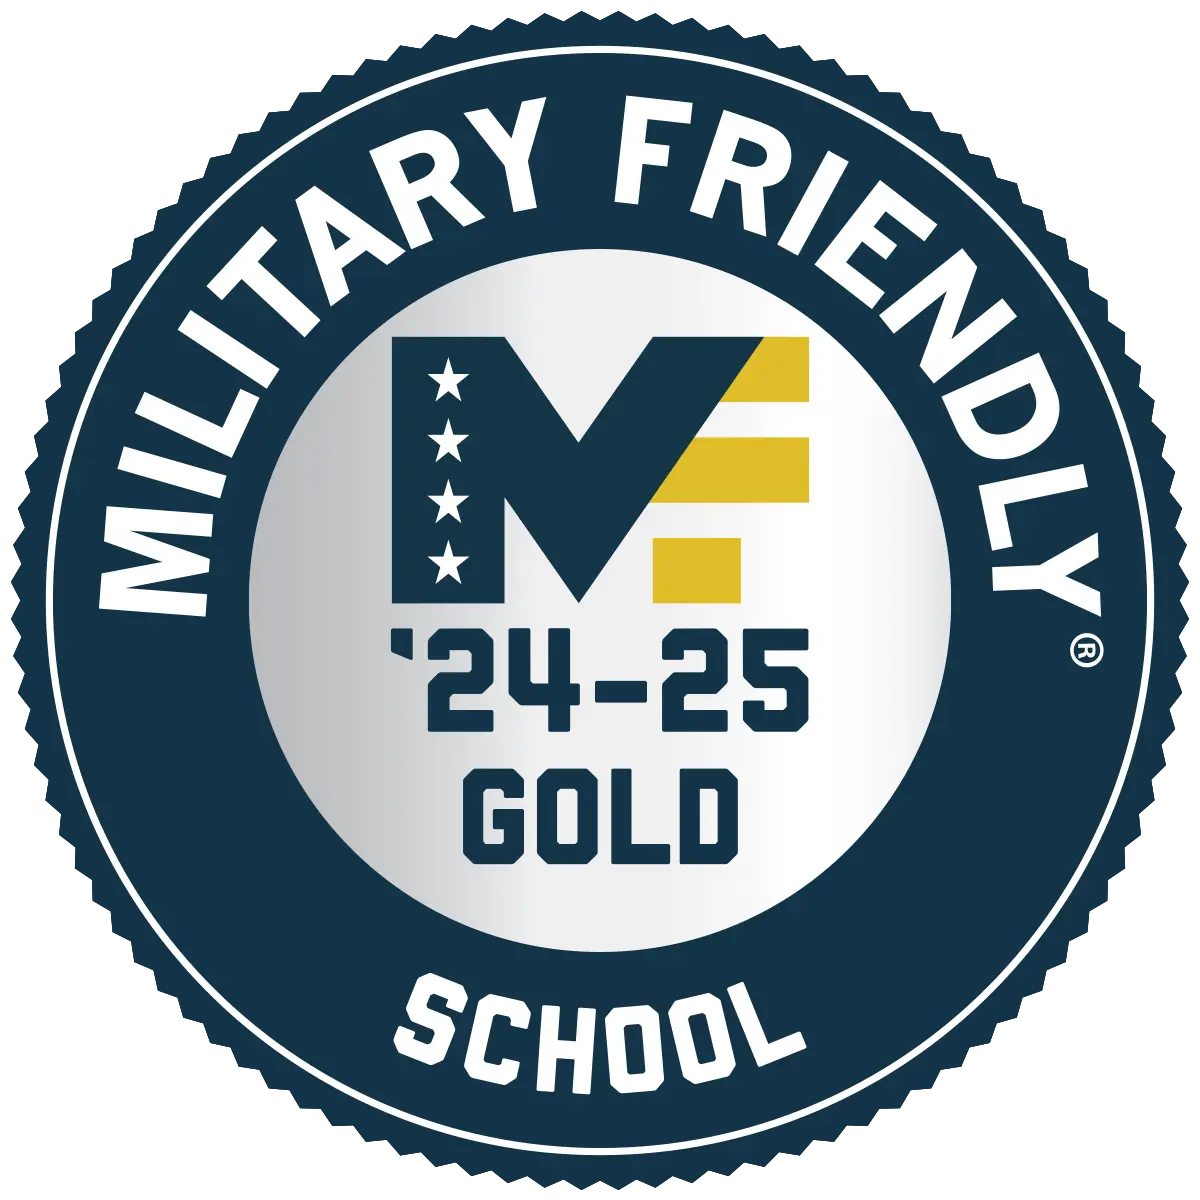 militaryfriendlyschool-21-22.png